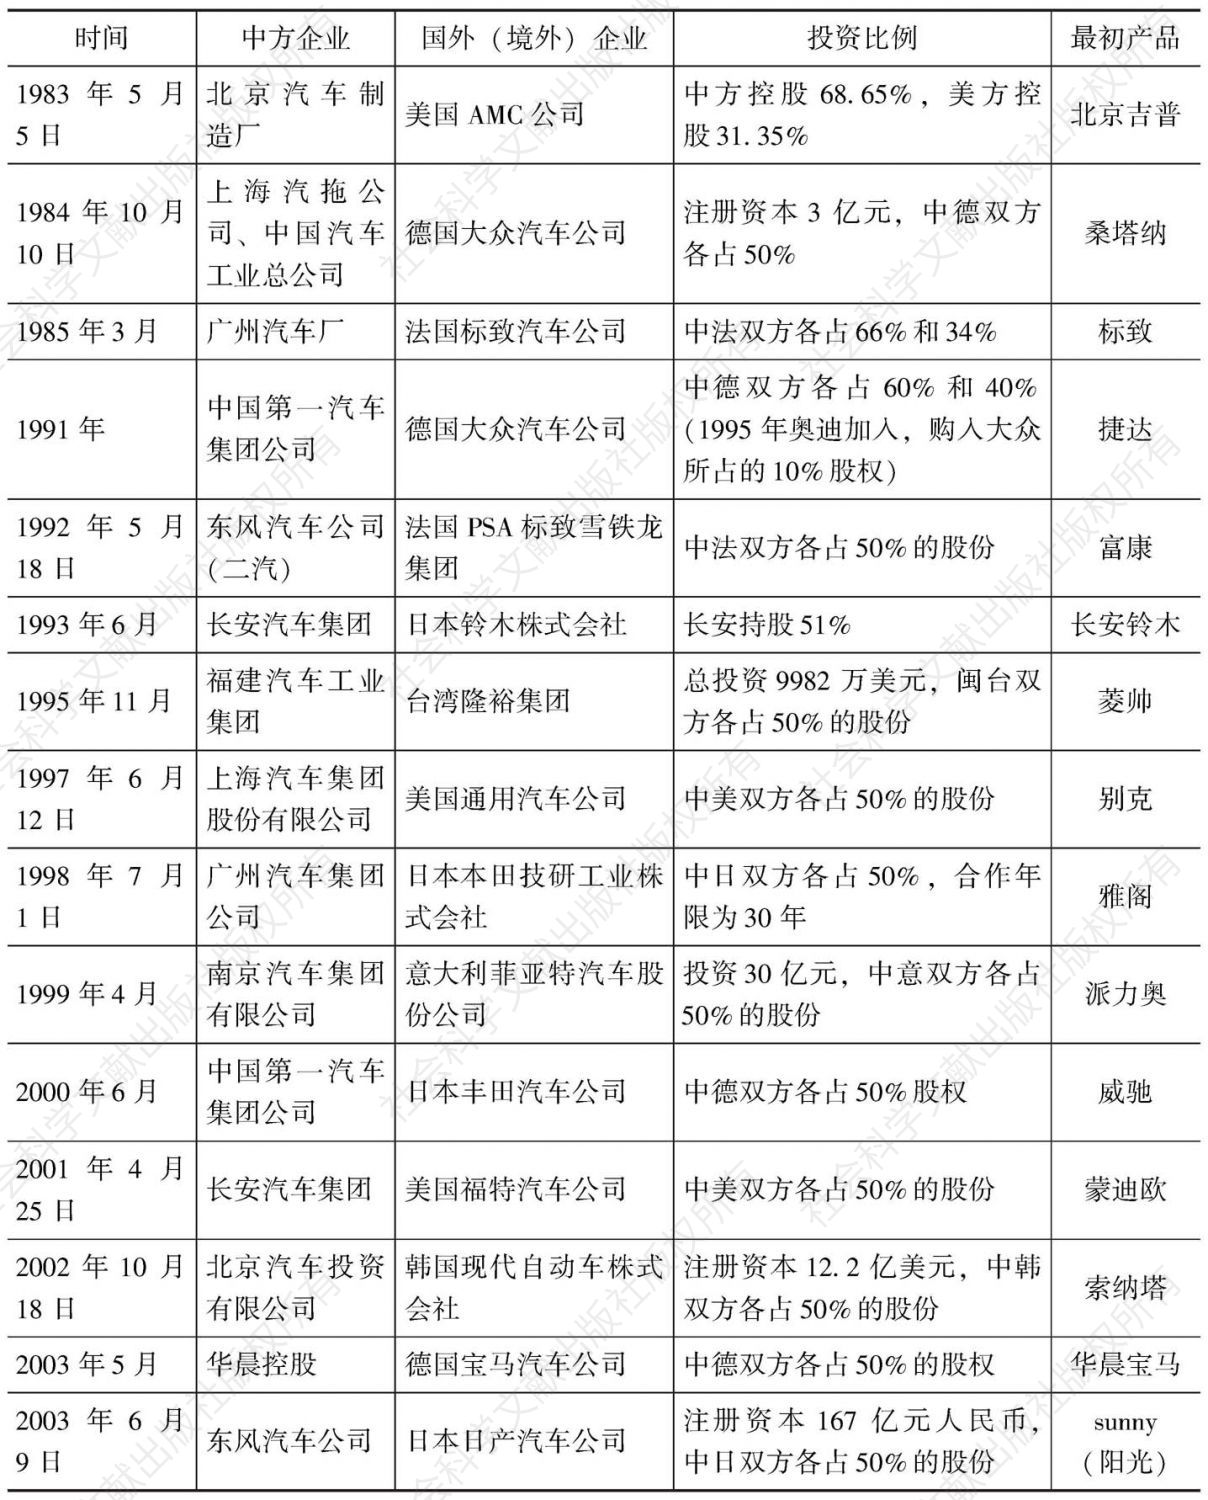 表5-6 中国汽车产业主要合资企业初建的时间表